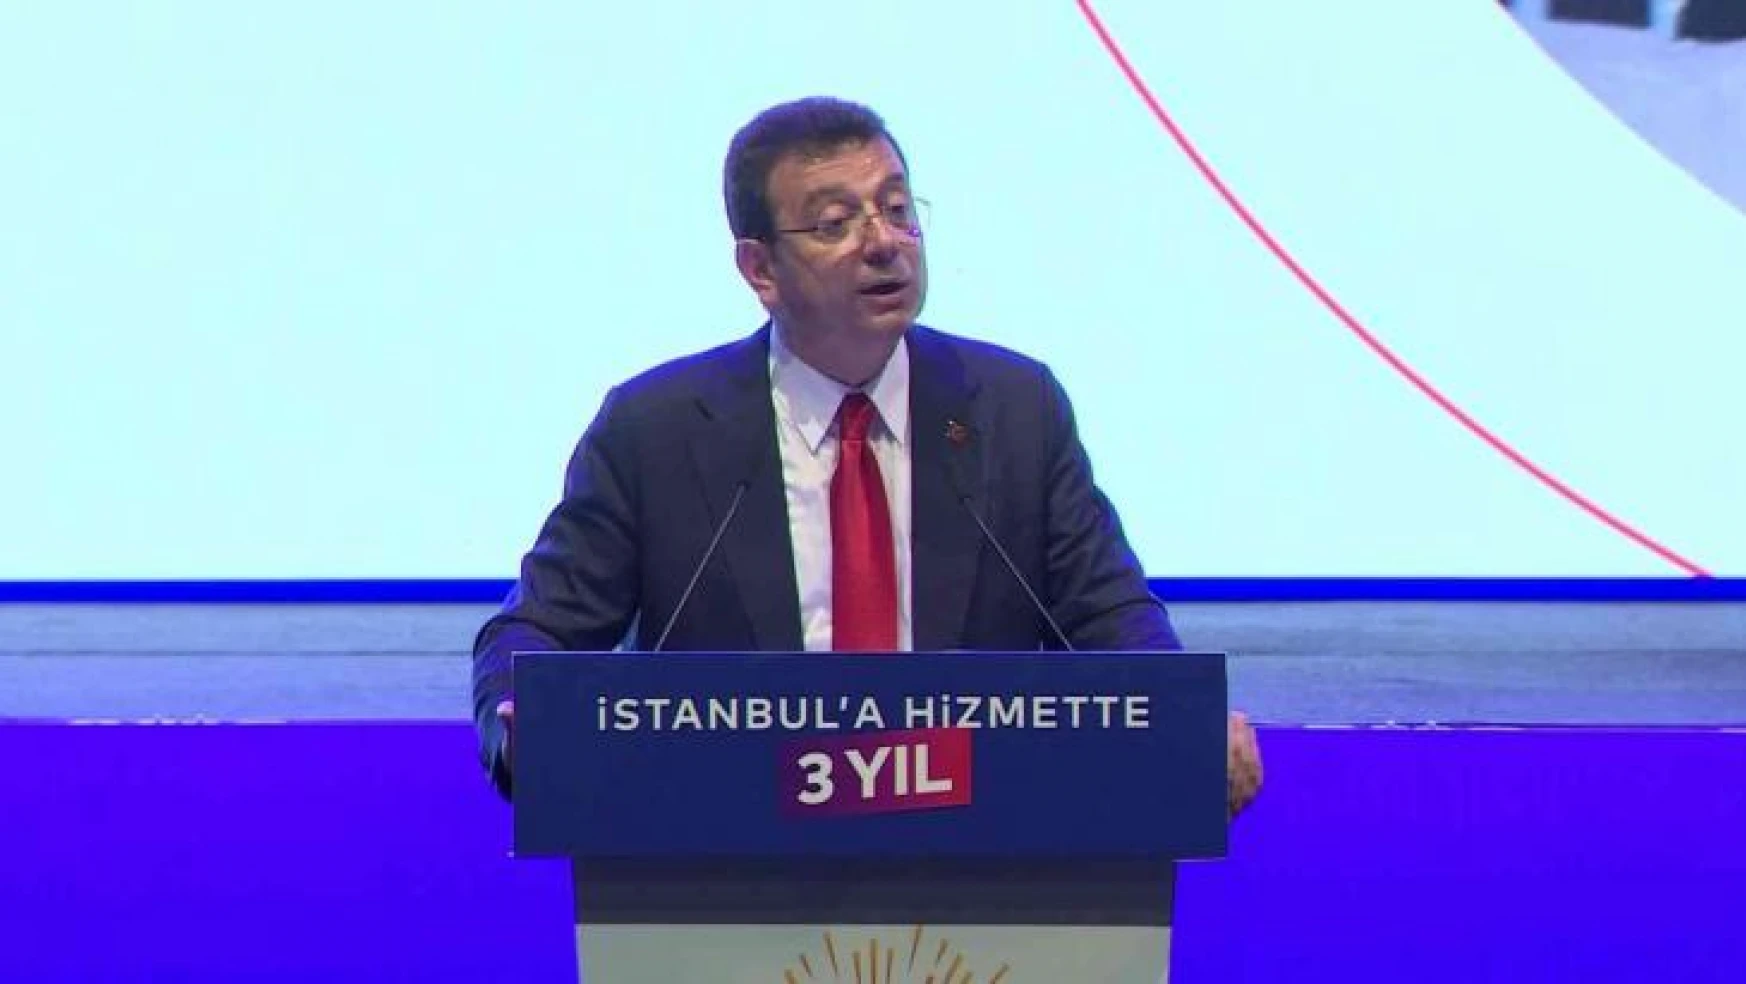 İBB Başkanı Ekrem İmamoğlu, İstanbul Büyükşehir Belediyesi 'Hizmette 3. Yıl' Sunumunda konuştu